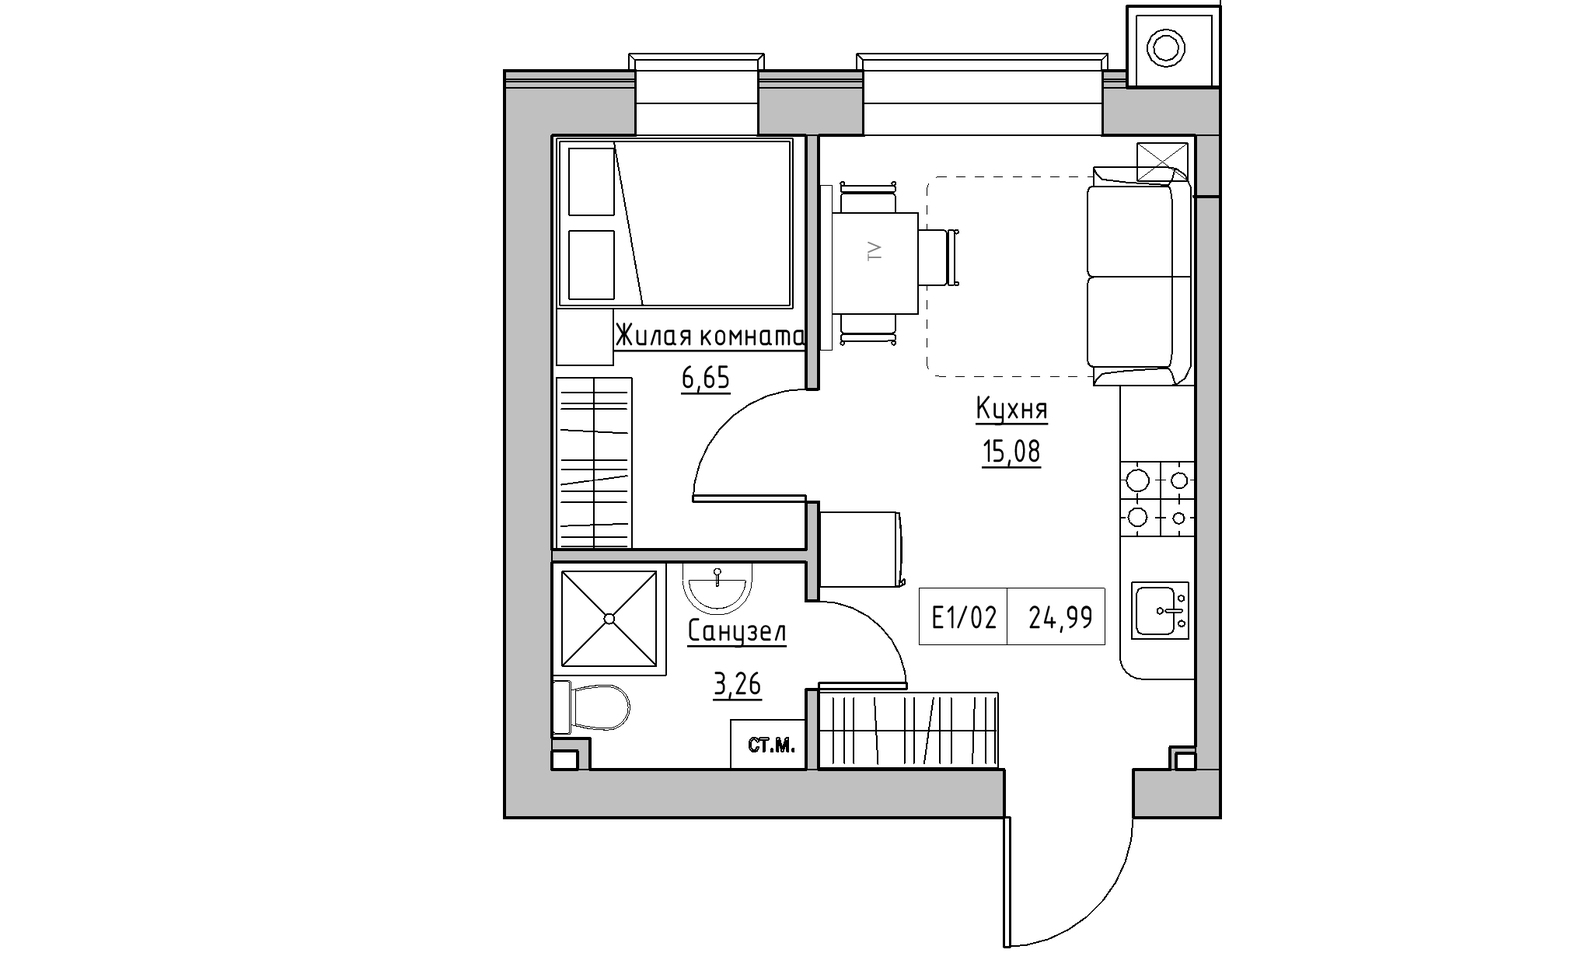 Планування 1-к квартира площею 24.99м2, KS-014-04/0004.